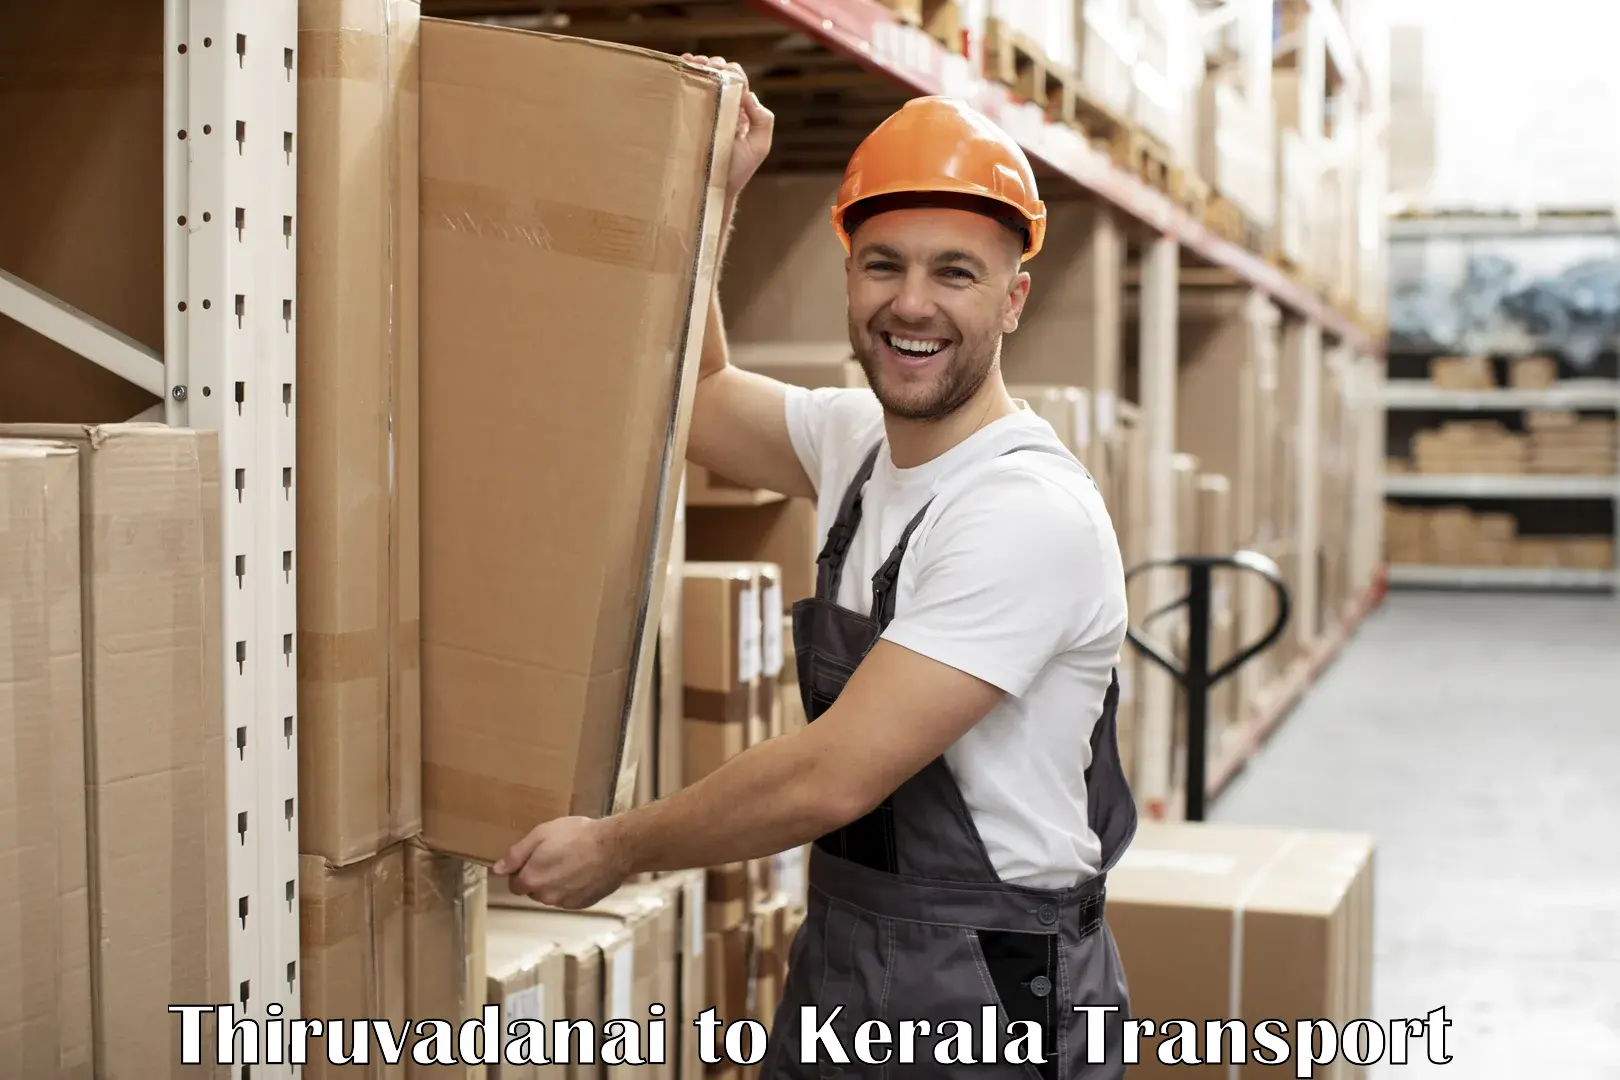 Part load transport service in India Thiruvadanai to Thiruvananthapuram